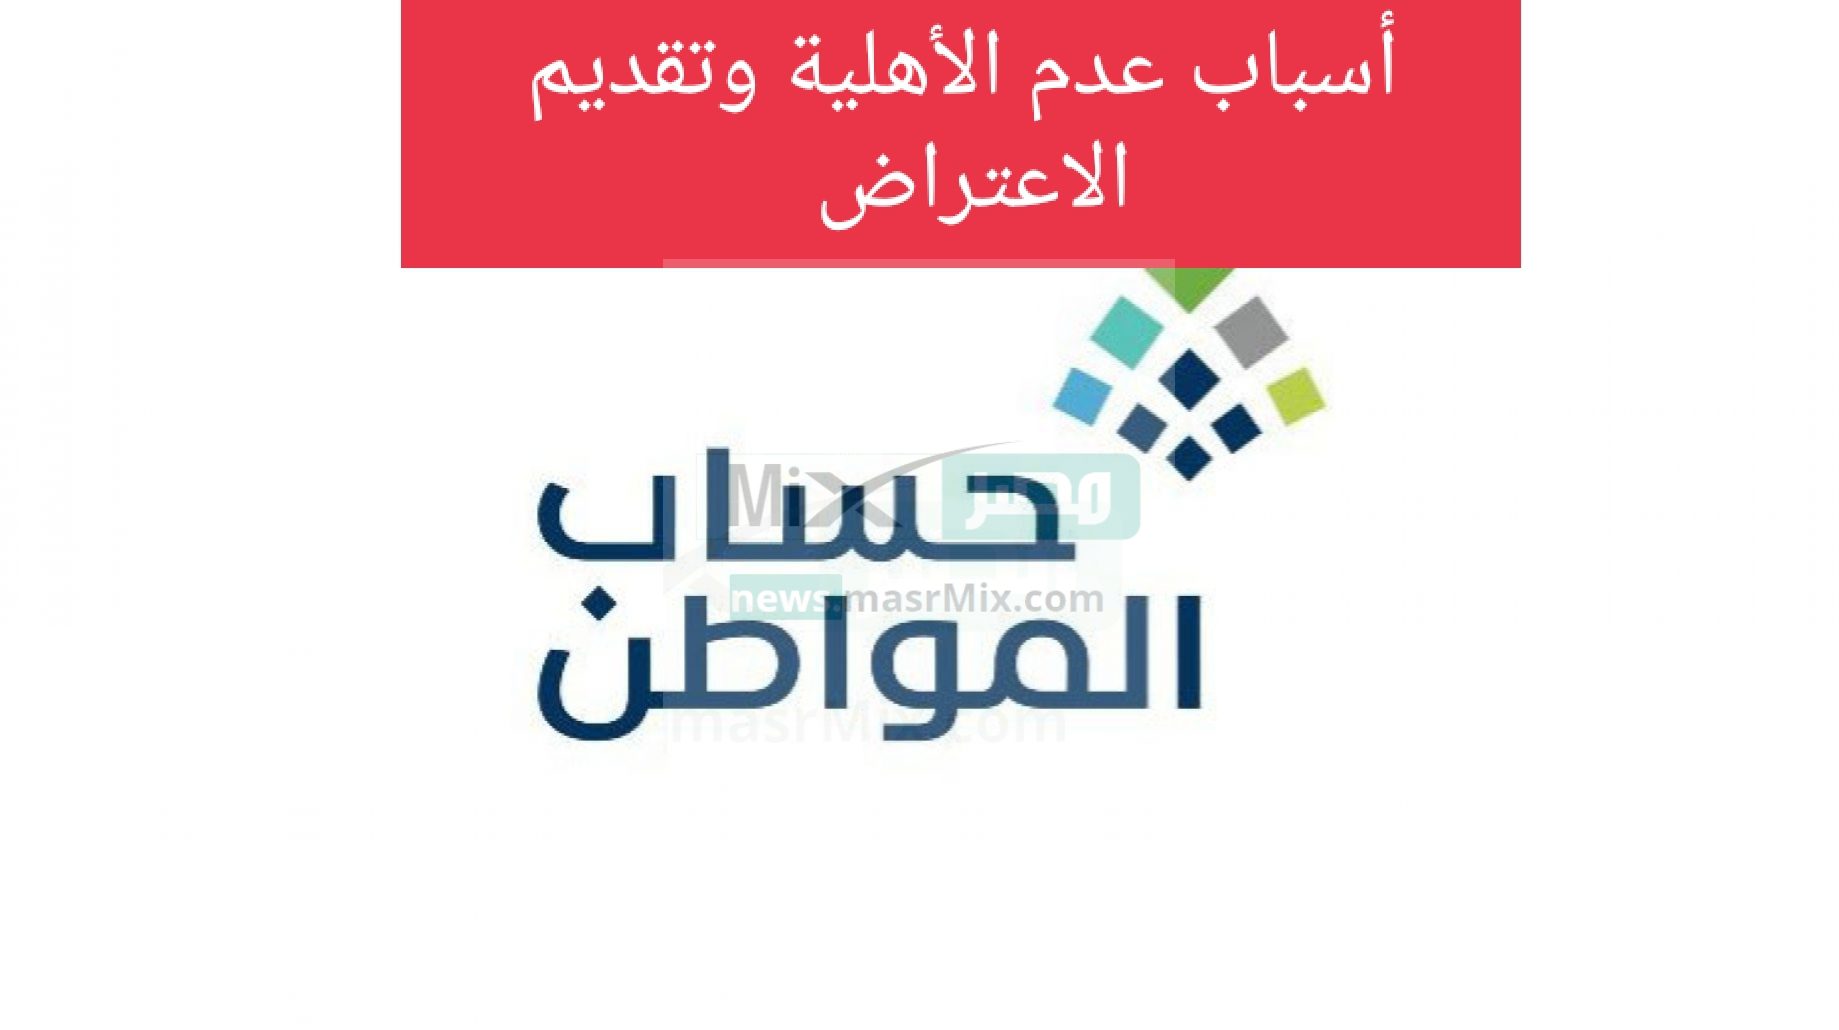 IMG ٢٠٢٣٠٢٠٩ ١٠٢٥٢٥ - مدونة التقنية العربية